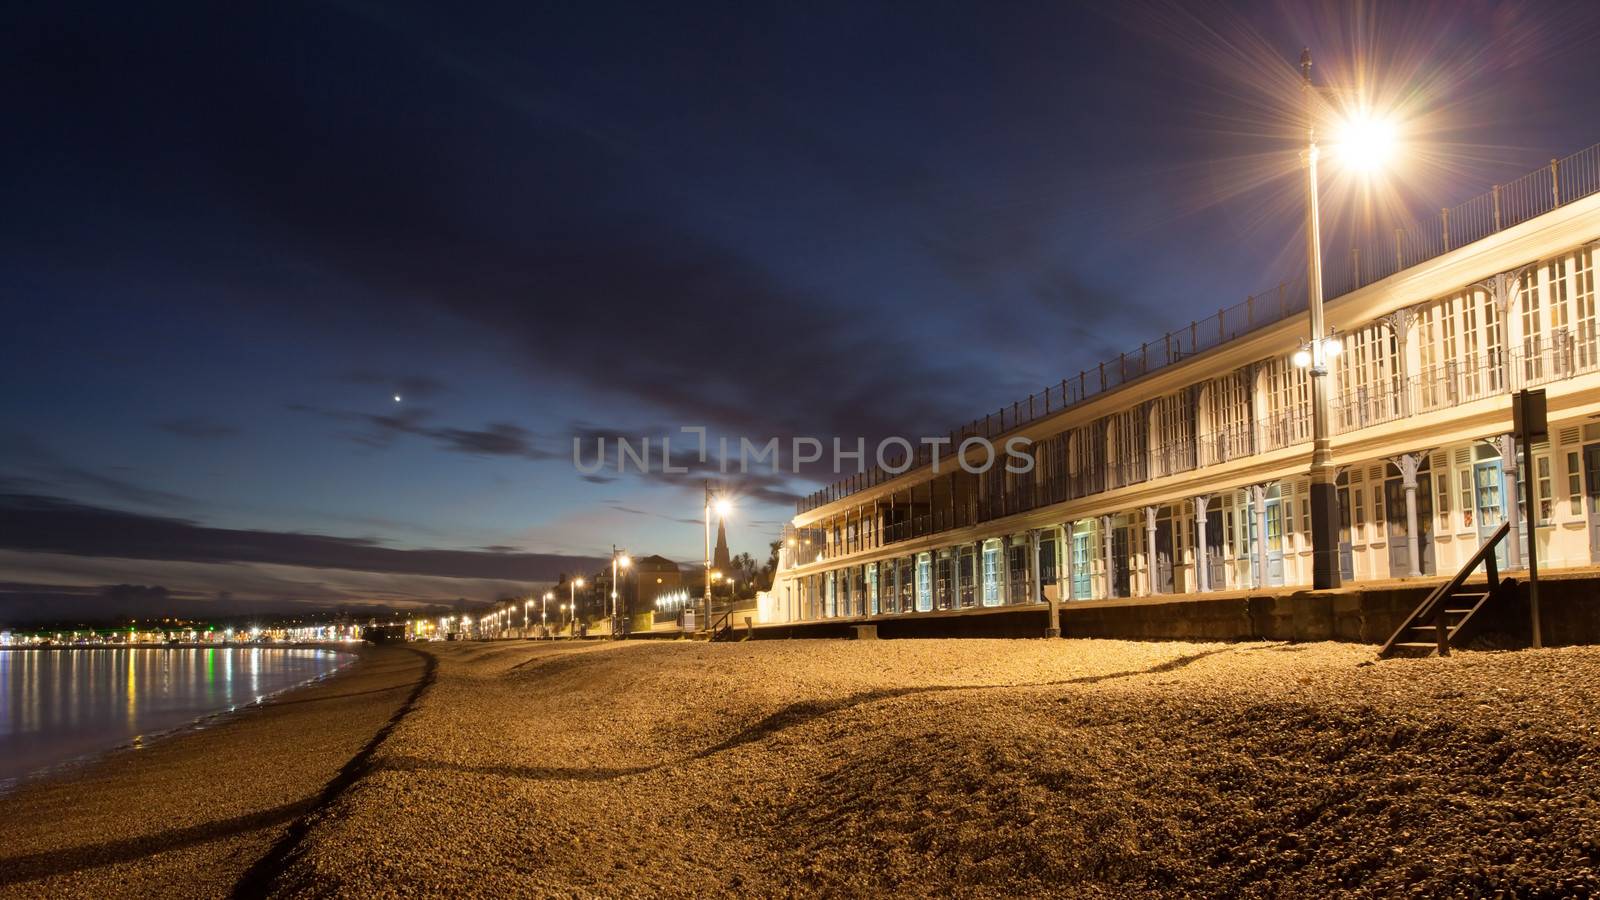 Victorian Promenade Beach Huts by olliemt